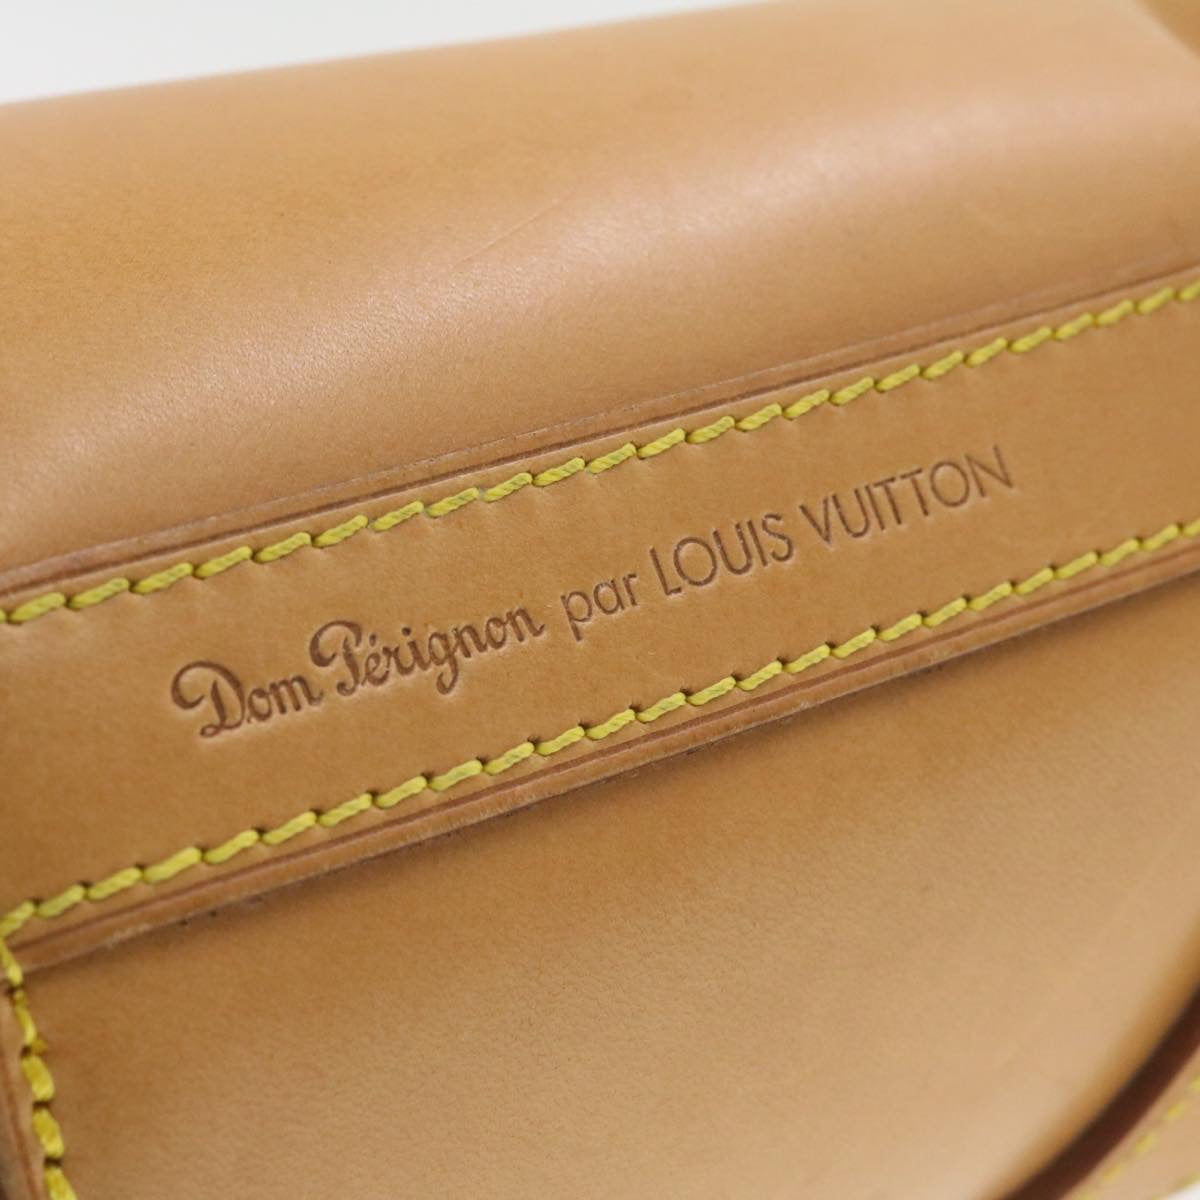 LOUIS VUITTON Nomad Dom Pérignon Champagne Case Hand Bag Beige